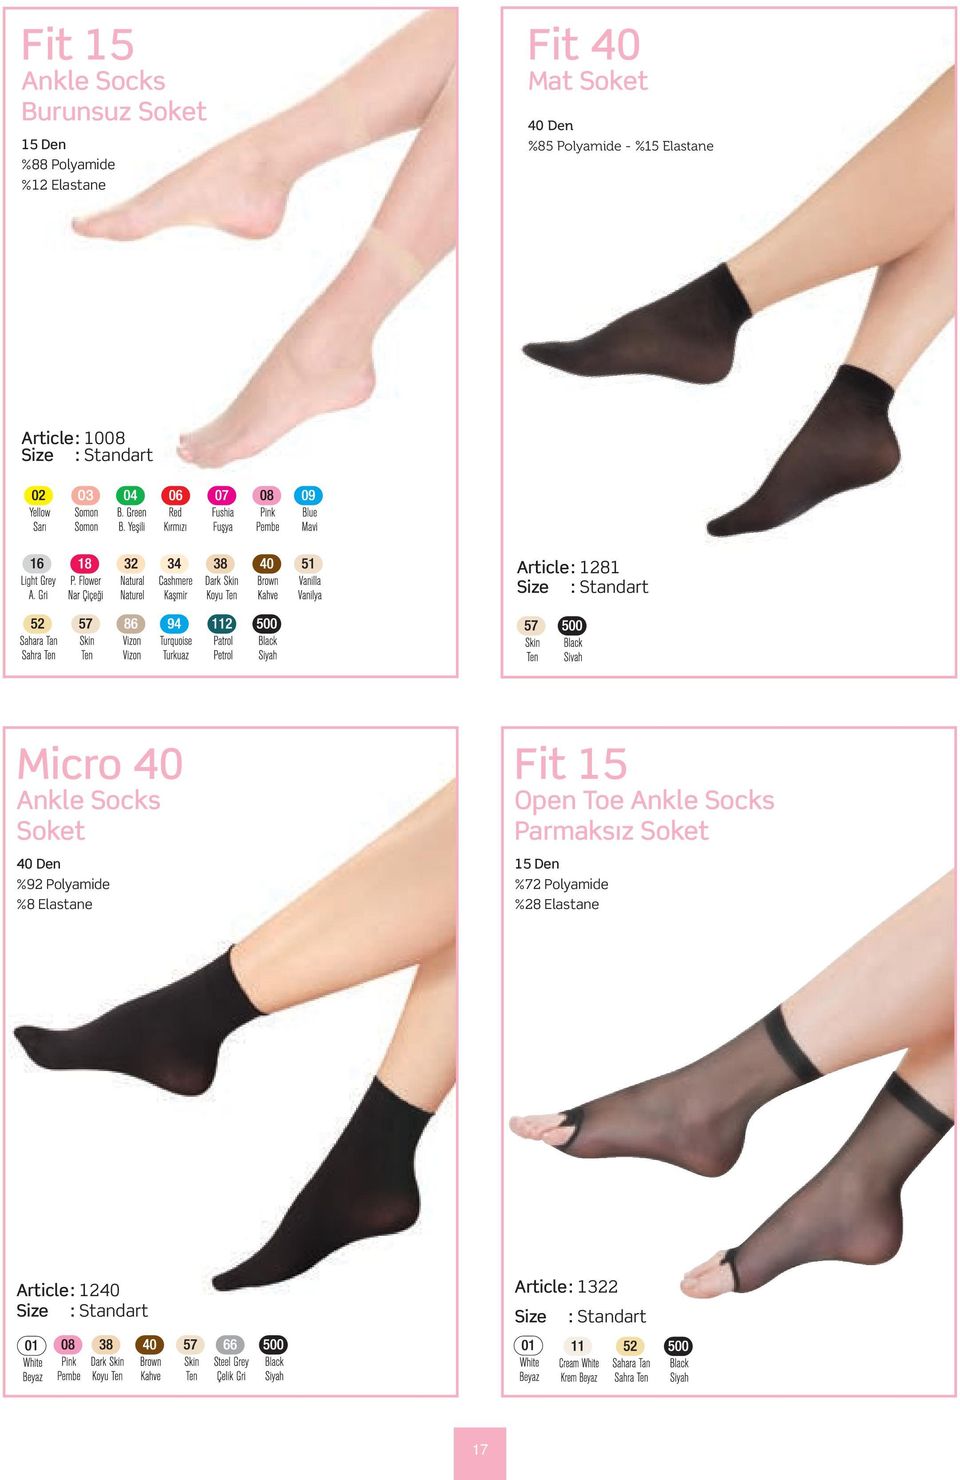 Ankle Socks Soket %92 Polyamide %8 Elastane Fit 15 Open Toe Ankle Socks